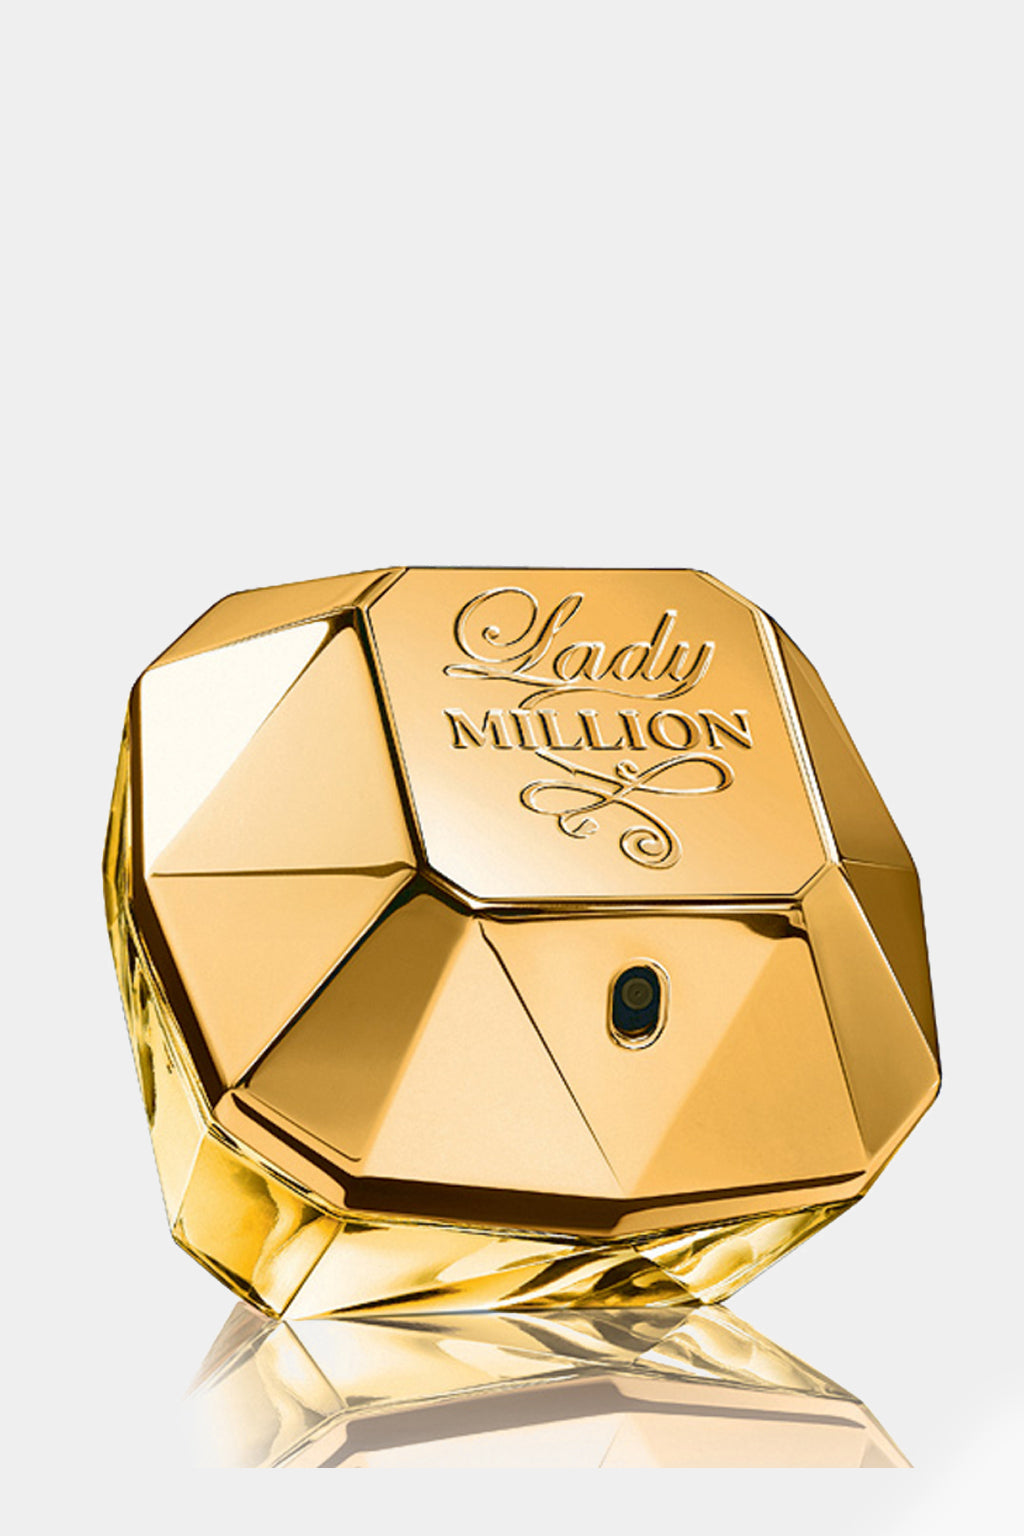 Paco Rabanne - Lady Million Eau de Parfum